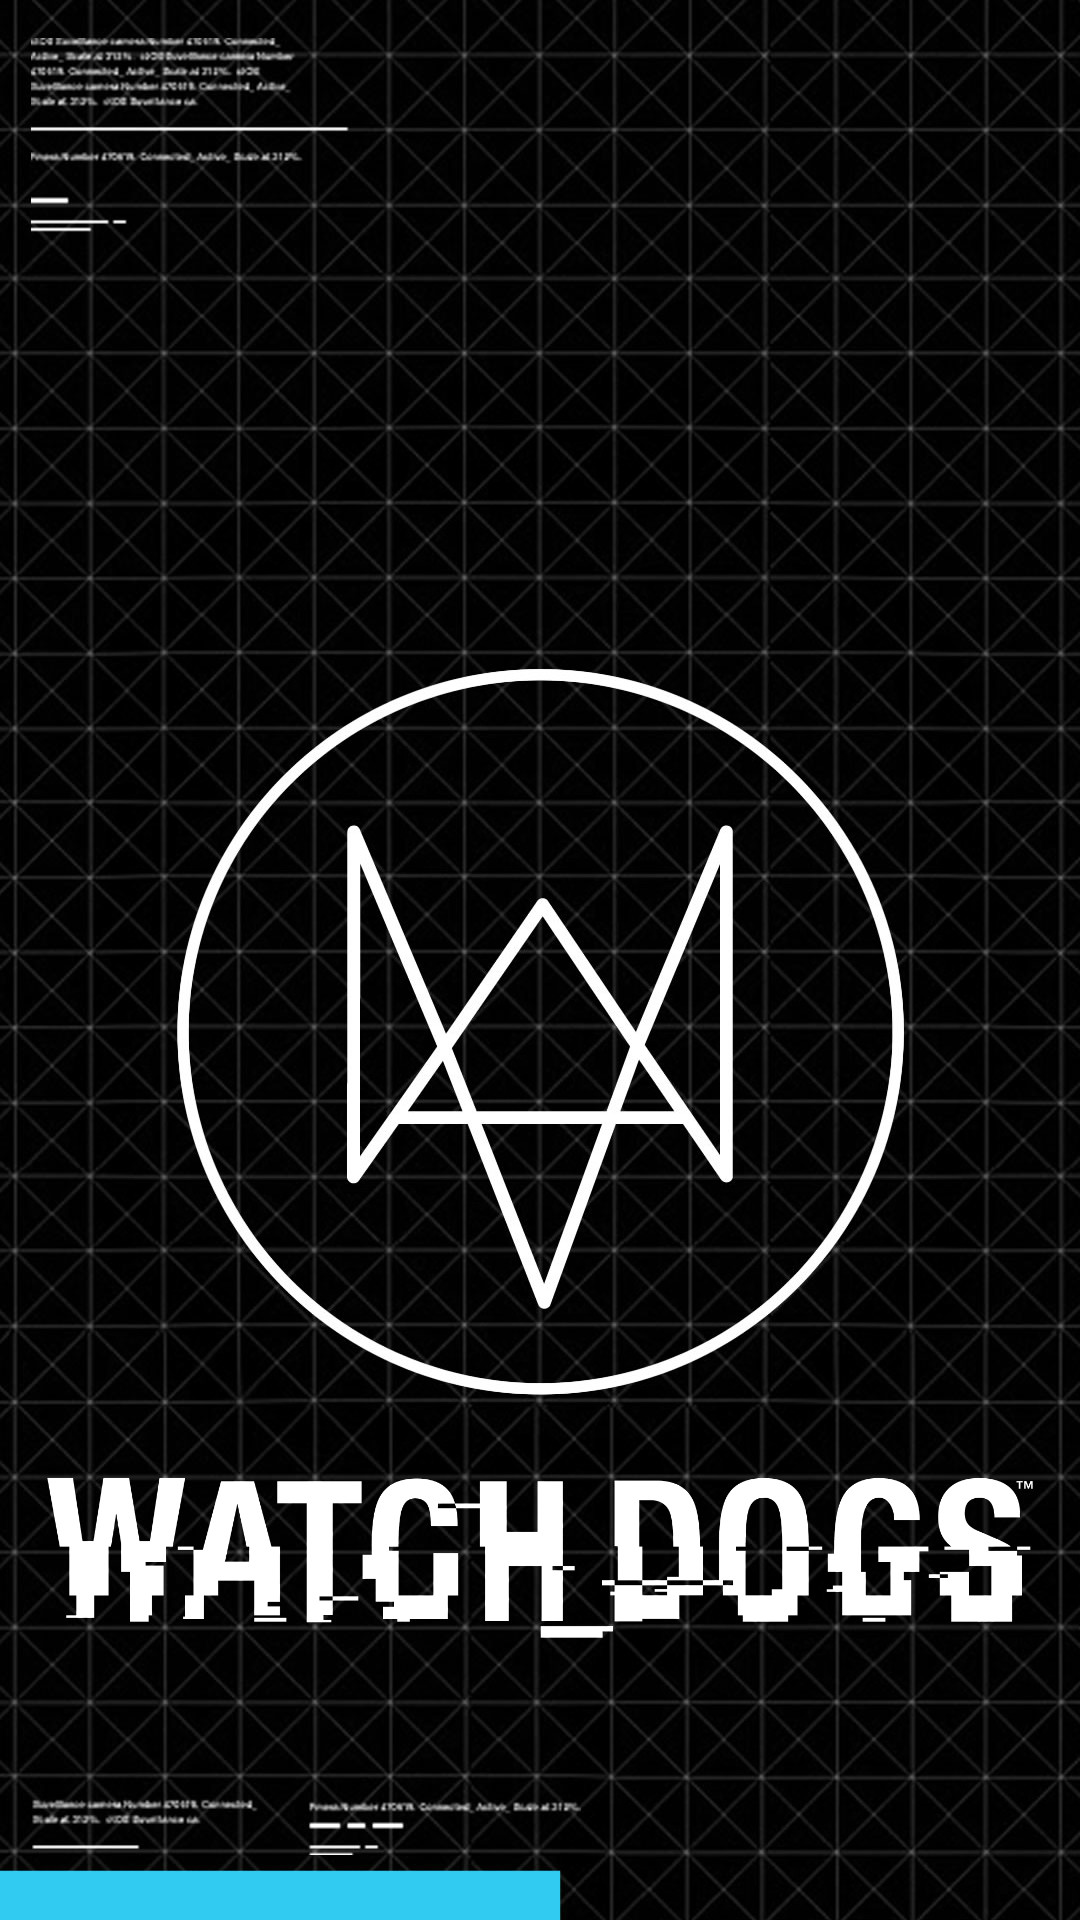 ウォッチドッグスのロゴの壁紙,フォント,テキスト,グラフィックス,パターン